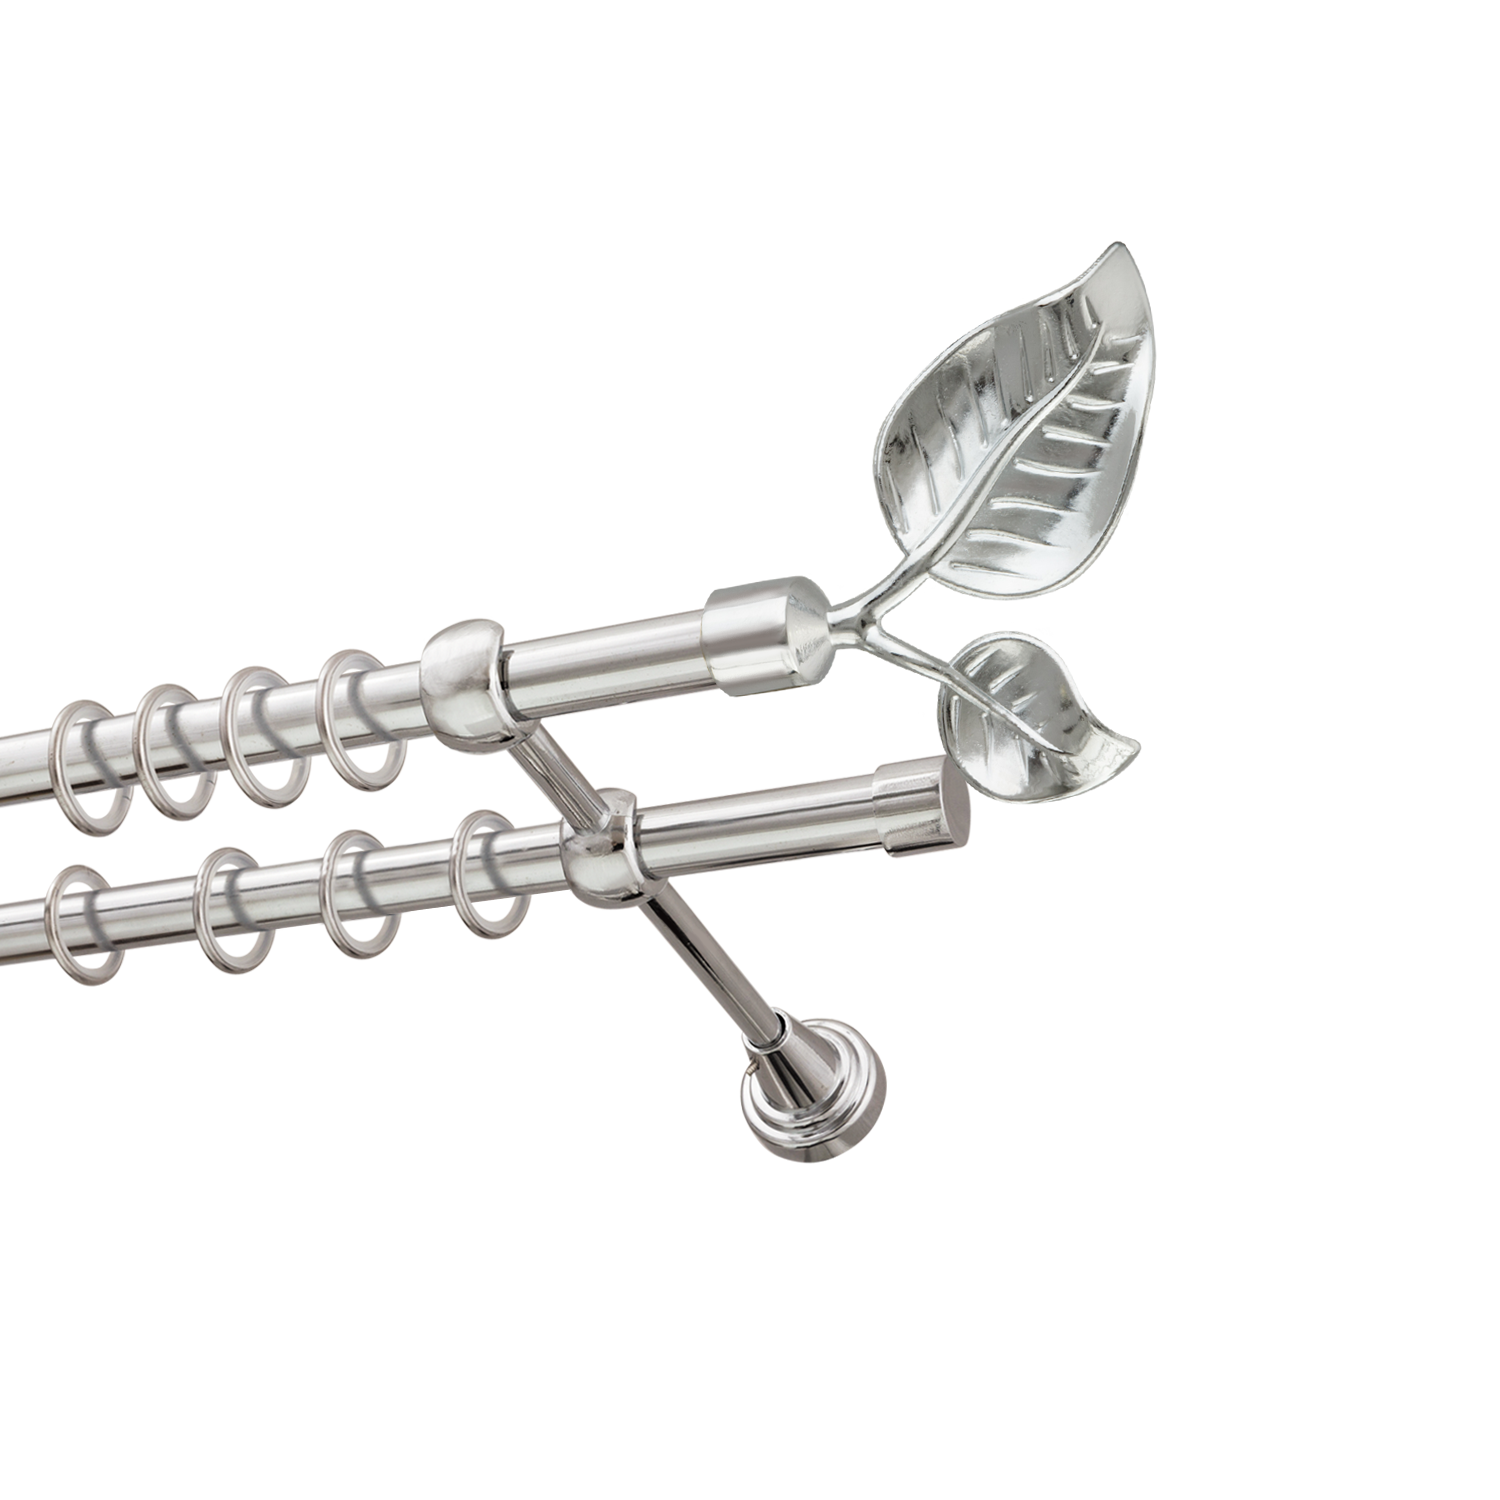 Металлический карниз для штор Тропик, двухрядный 16/16 мм, серебро, гладкая штанга, длина 140 см - фото Wikidecor.ru